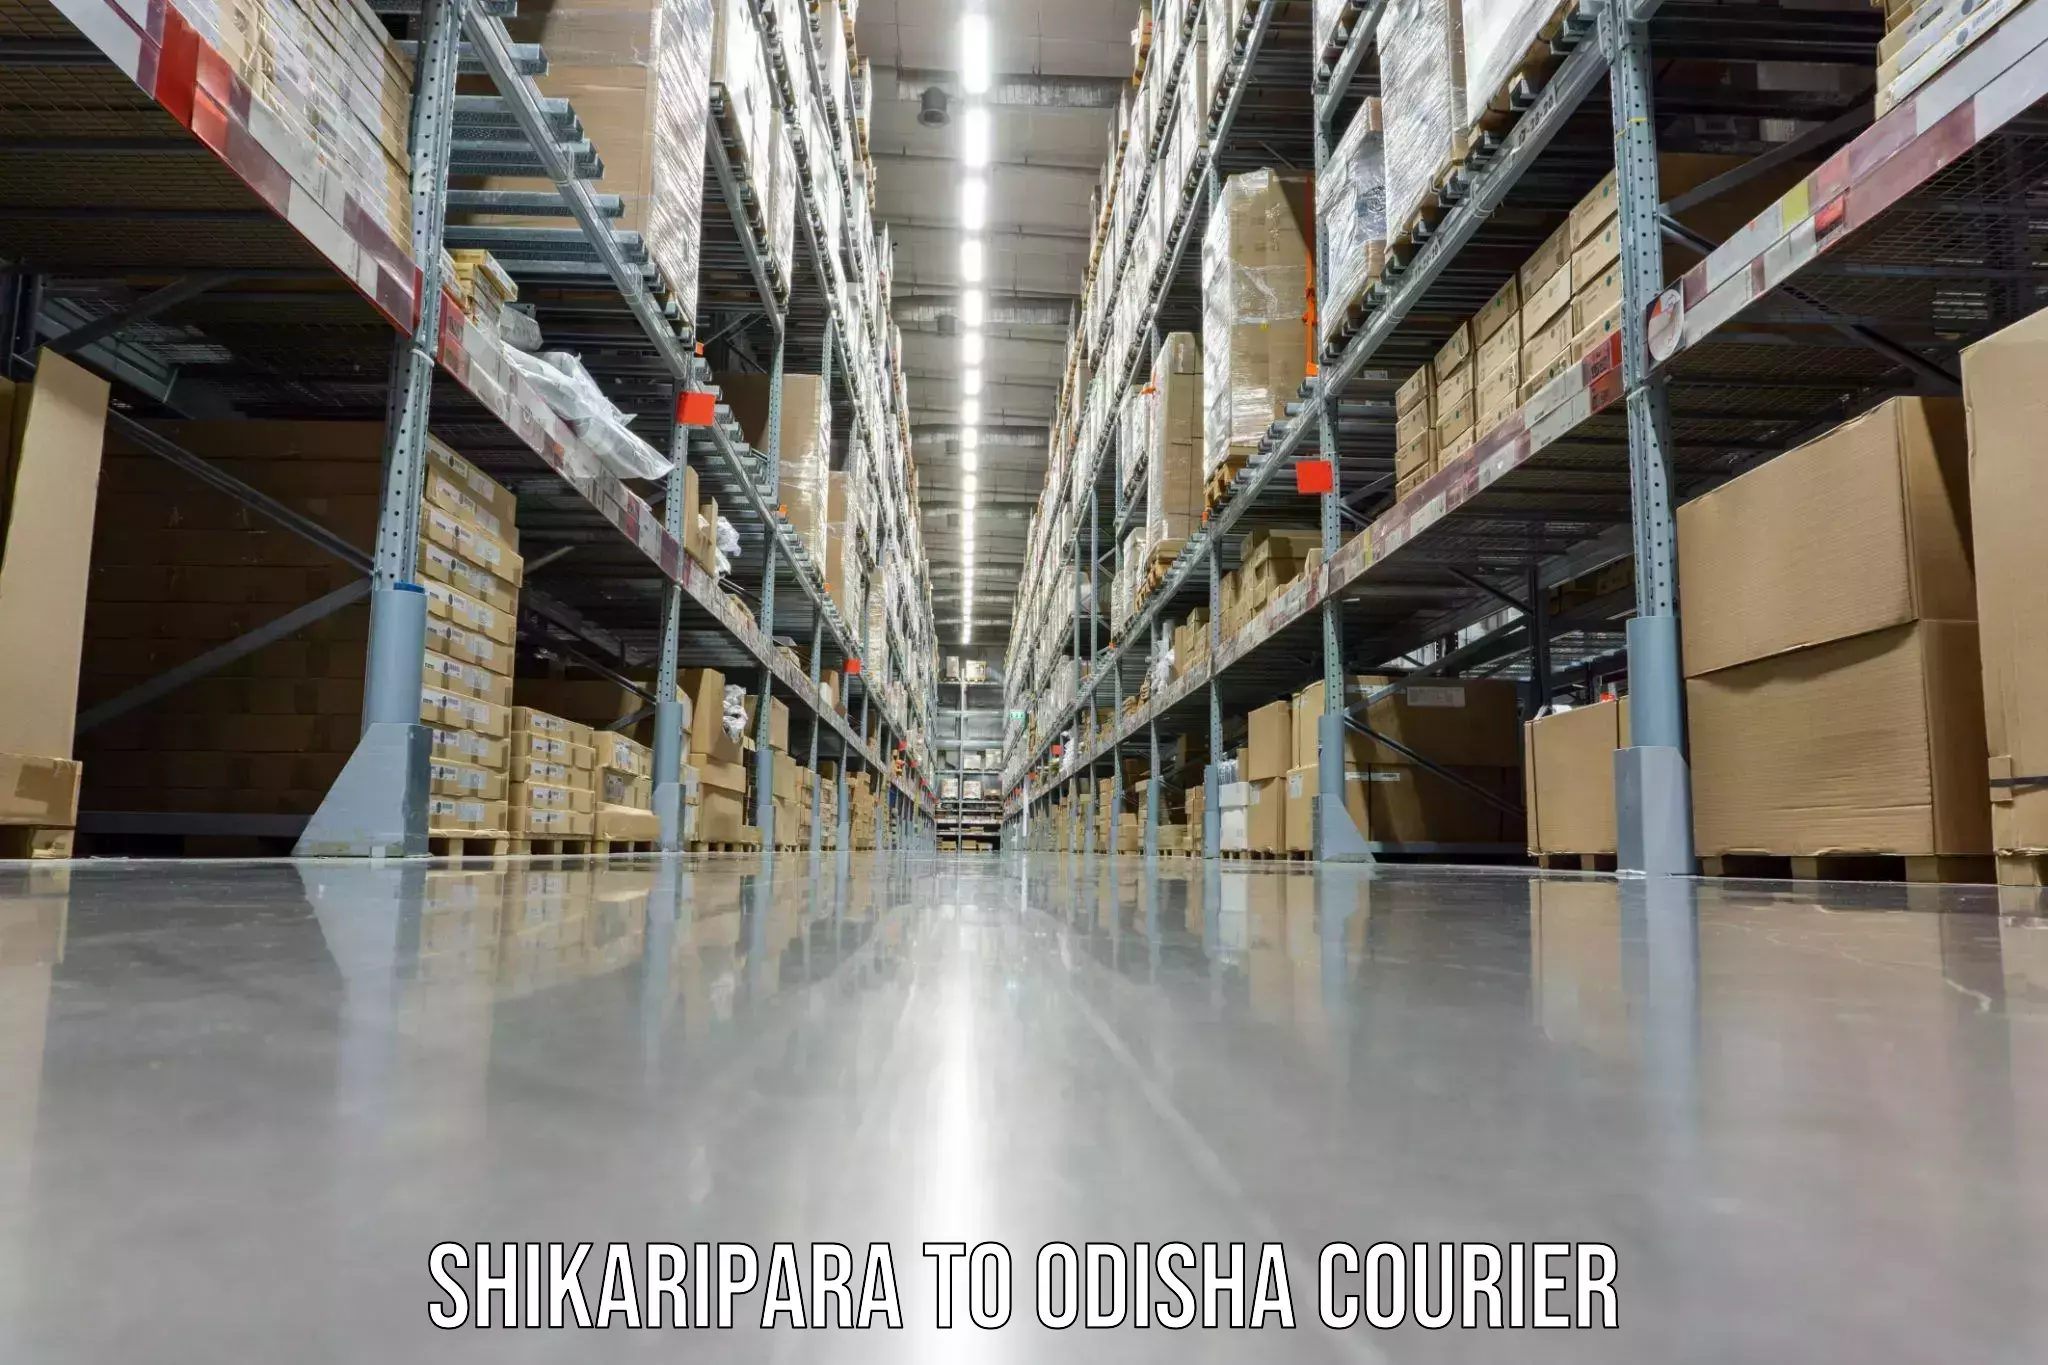 Moving and storage services Shikaripara to Bahalda